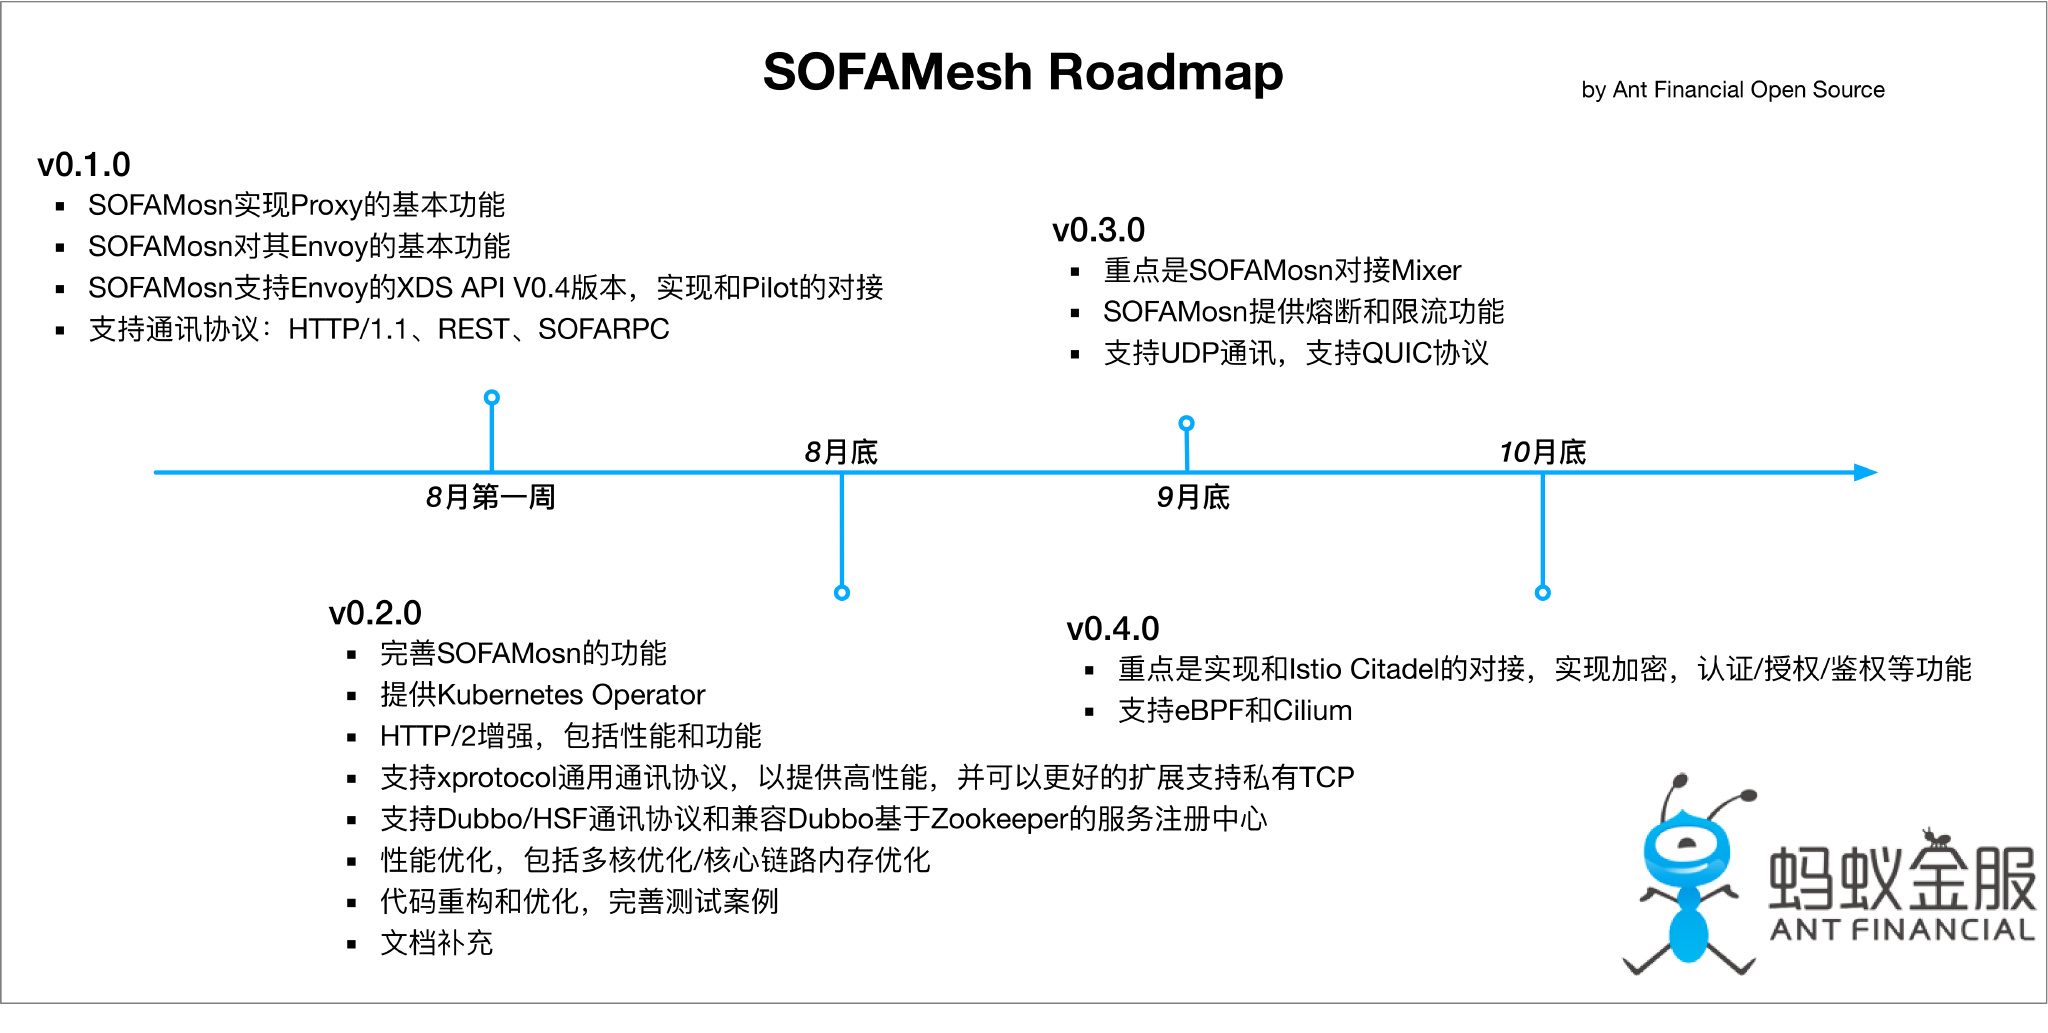 SOFA Mesh roadmap